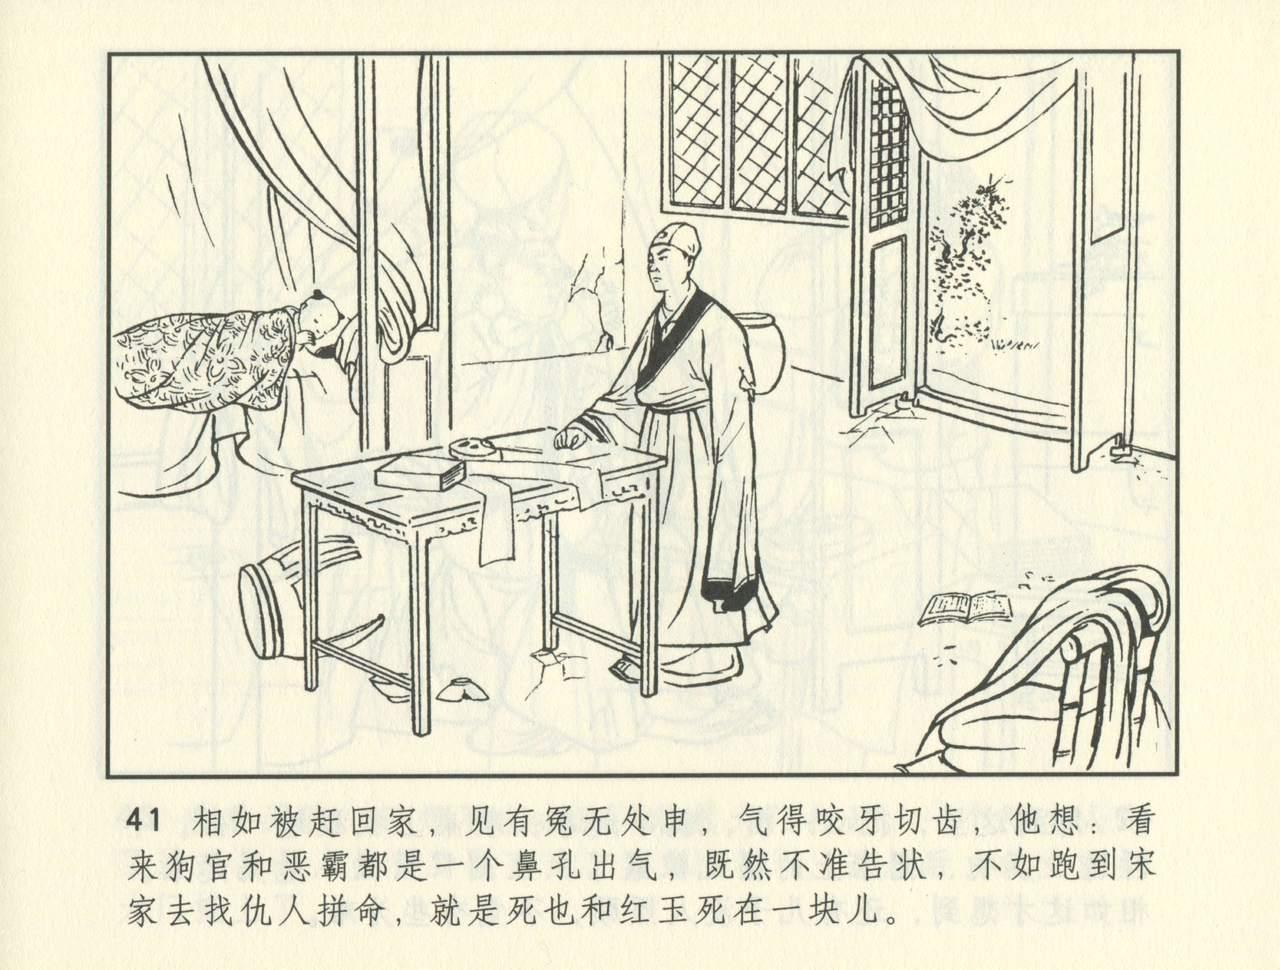 聊斋志异 张玮等绘 天津人民美术出版社 卷二十一 ~ 三十 381